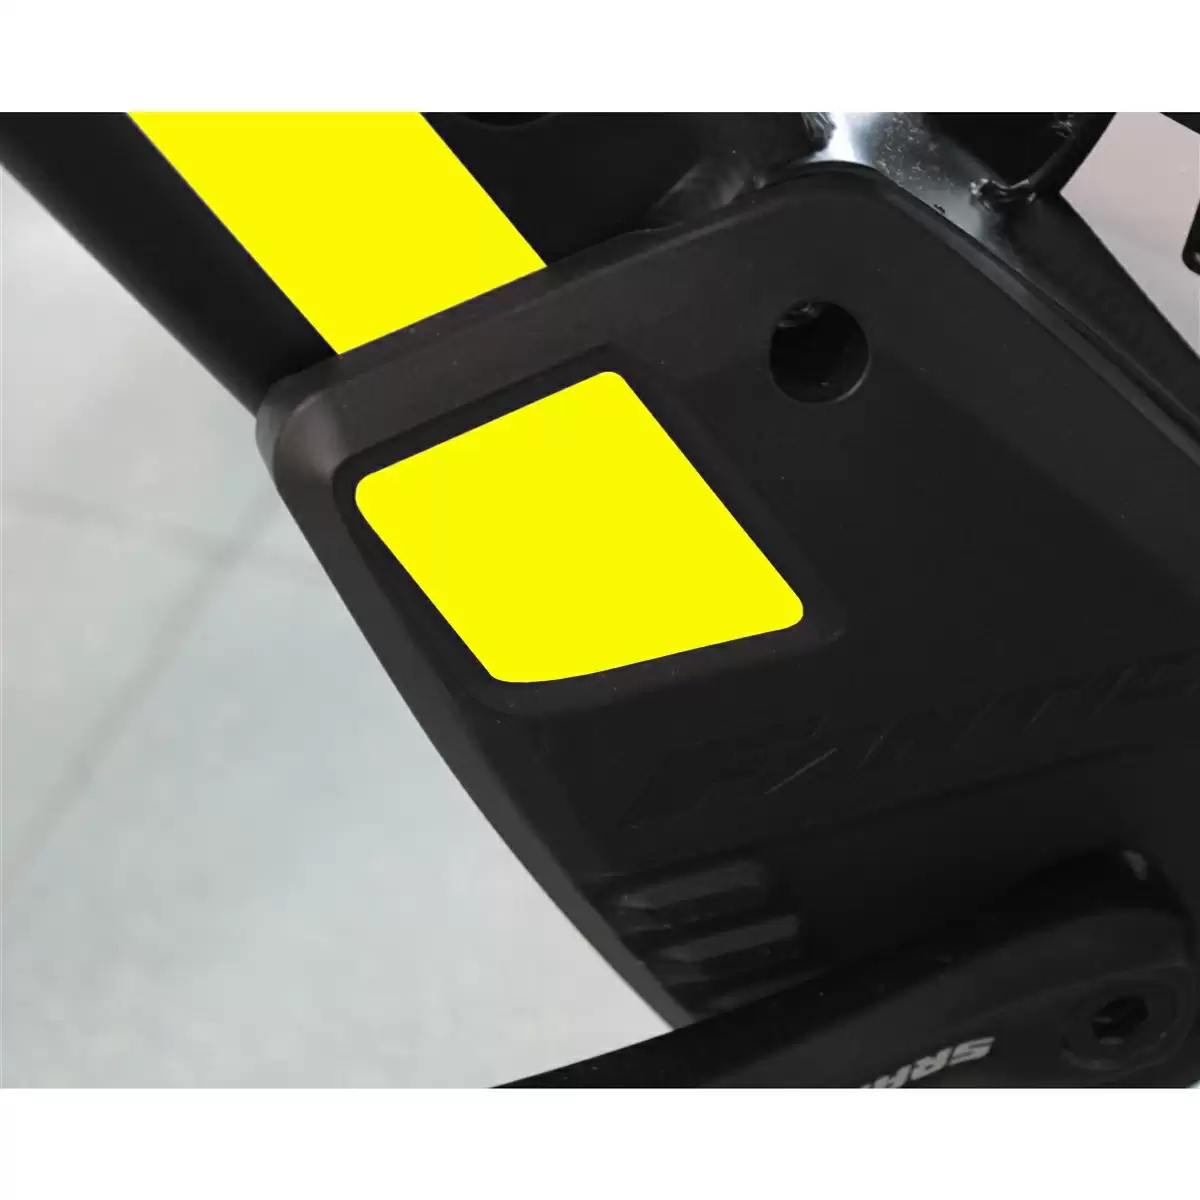 Autocollant de rechange pour carter Integra jaune fluo - image